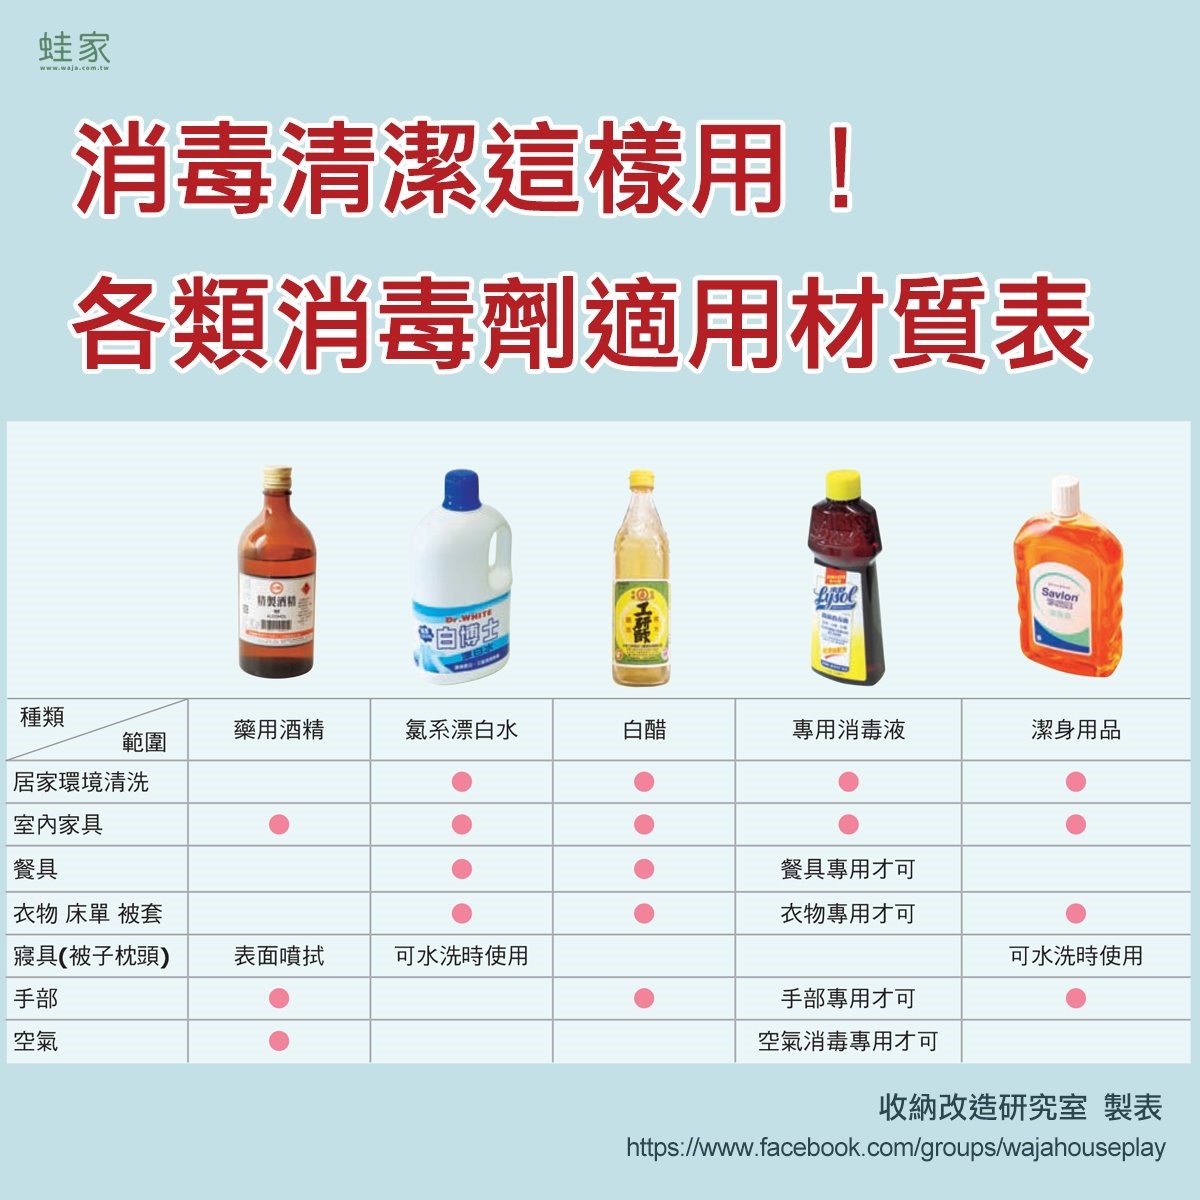 居家清潔消毒劑的使用範圍比較表。